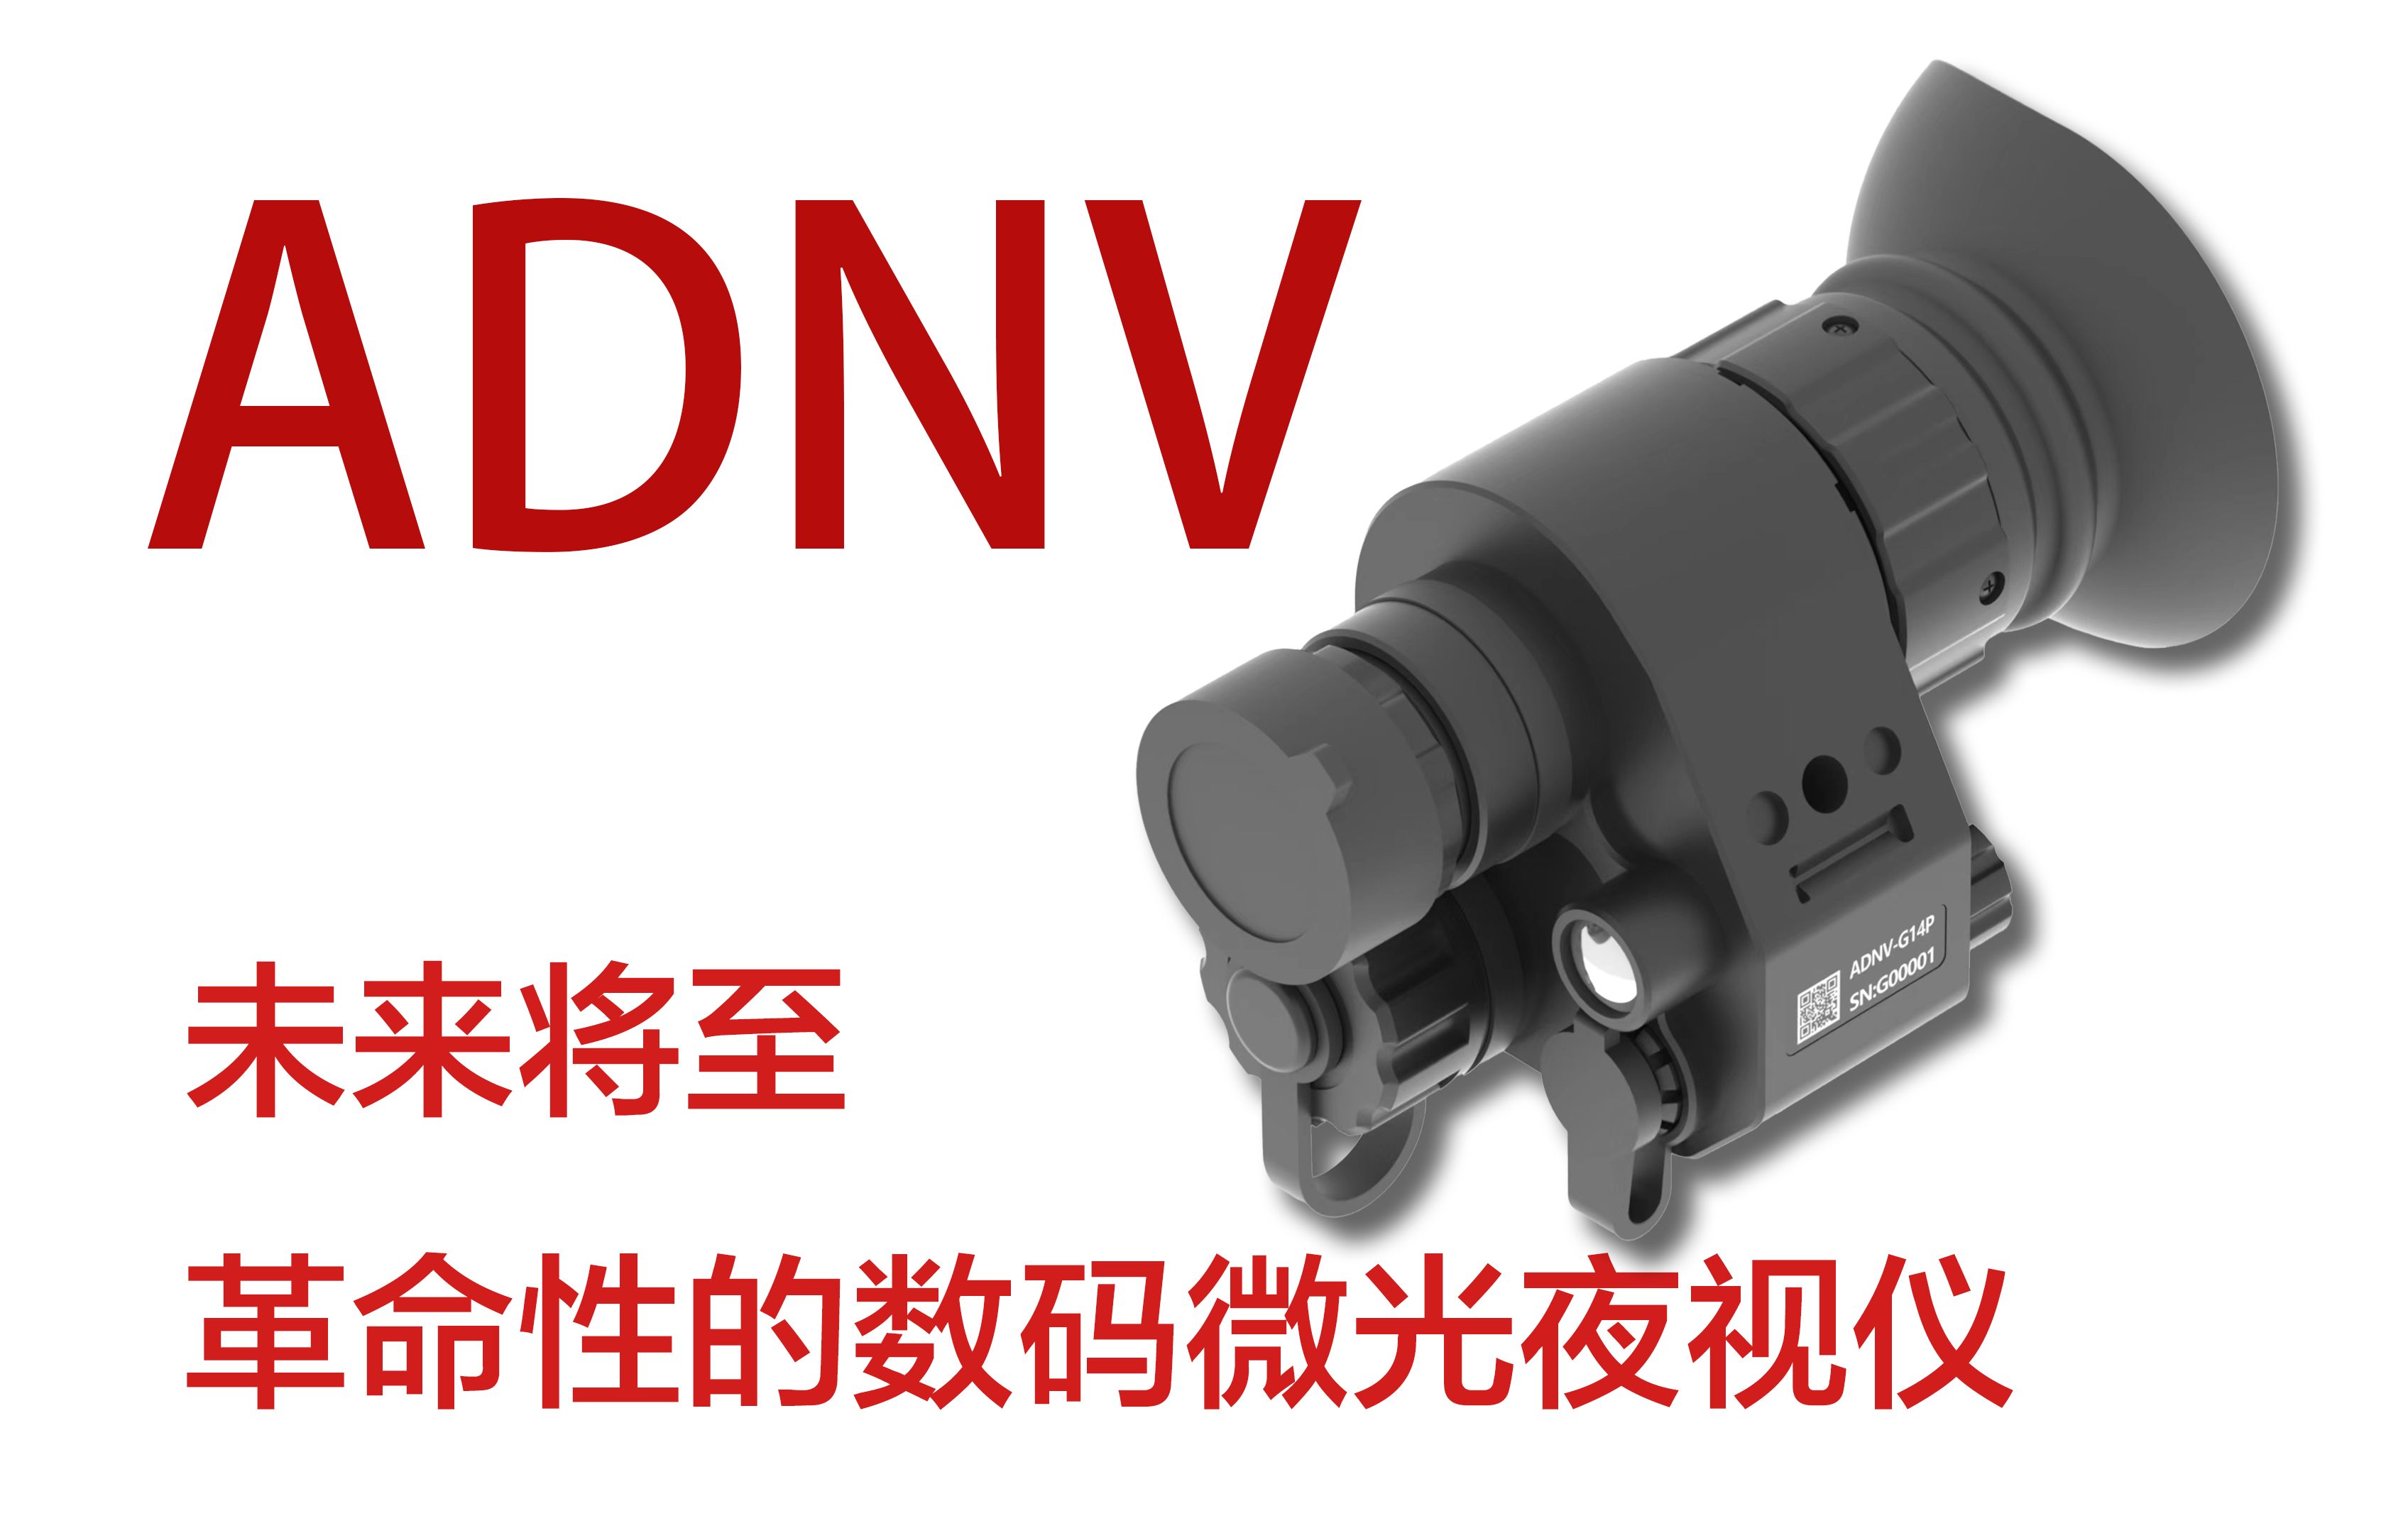 以后不能再说狗都不买数码夜视仪了，革命性的数码夜视仪ADNV—G14P